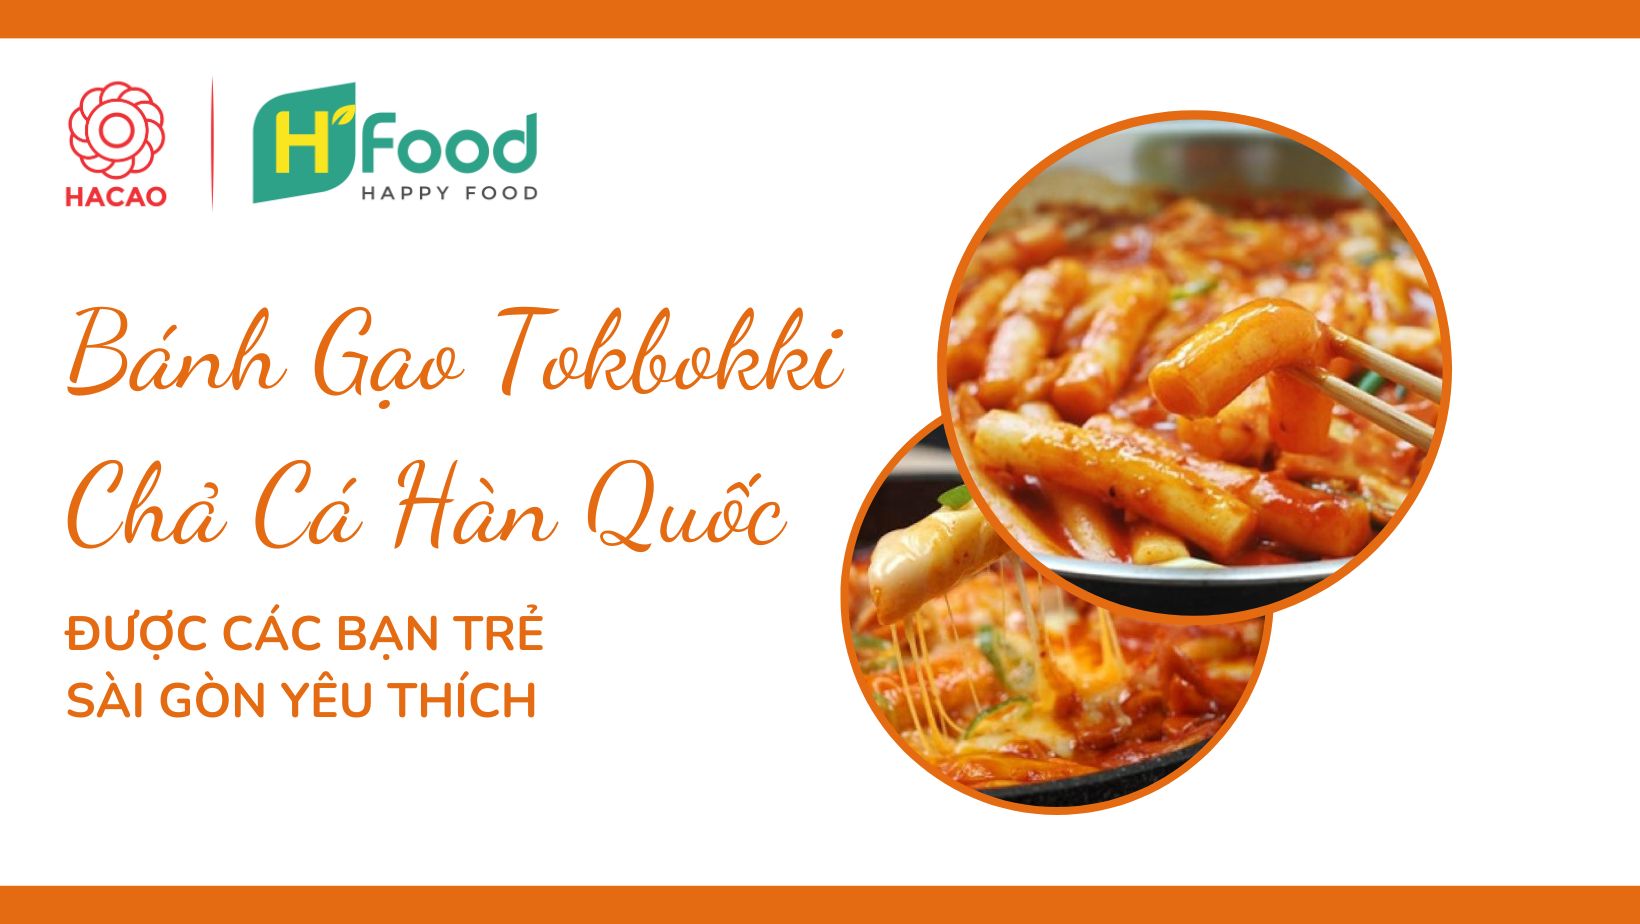 Bánh gạo Tokbokki chả cá là món ăn không thể bỏ lỡ dành cho tín đồ ẩm thực. Hãy mở chiếc hình ảnh này ra và chìm đắm trong hương vị đậm đà của món ăn đặc trưng này.